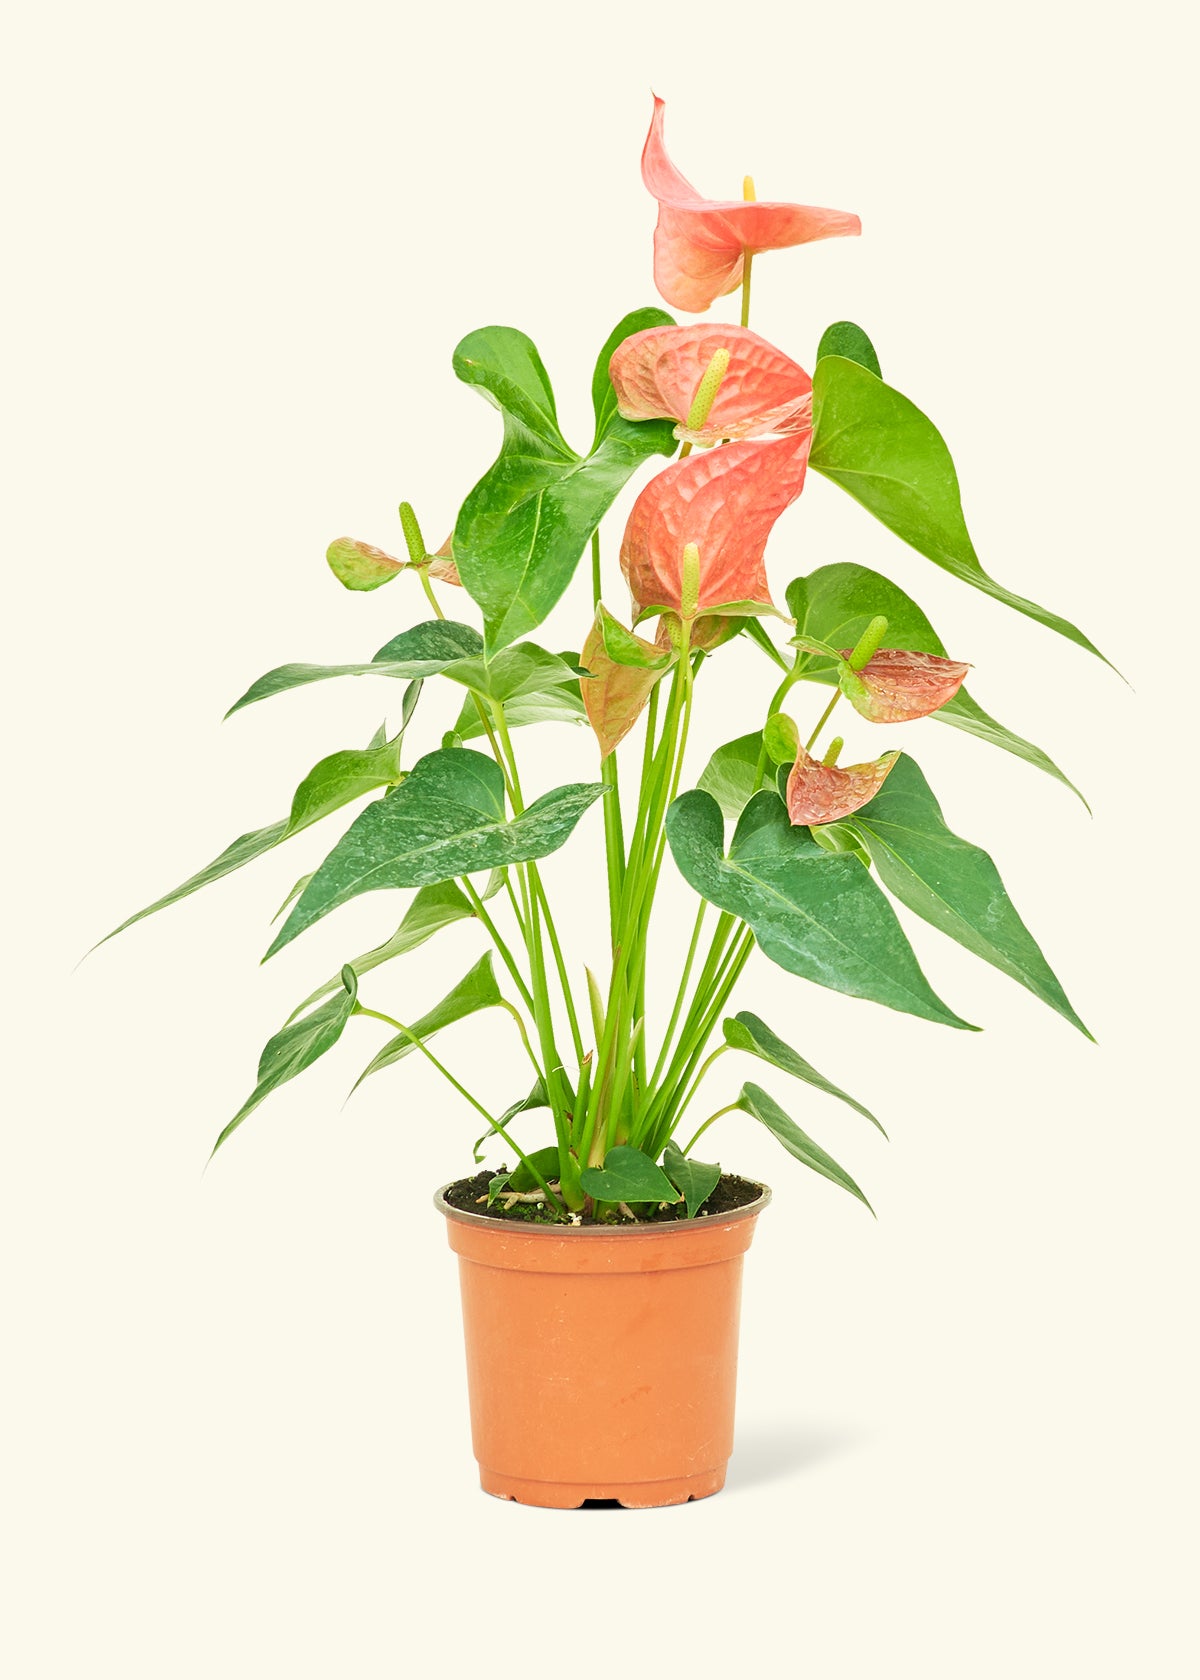 Medium Anthurium 'Pink Flamingo' in a grow pot.